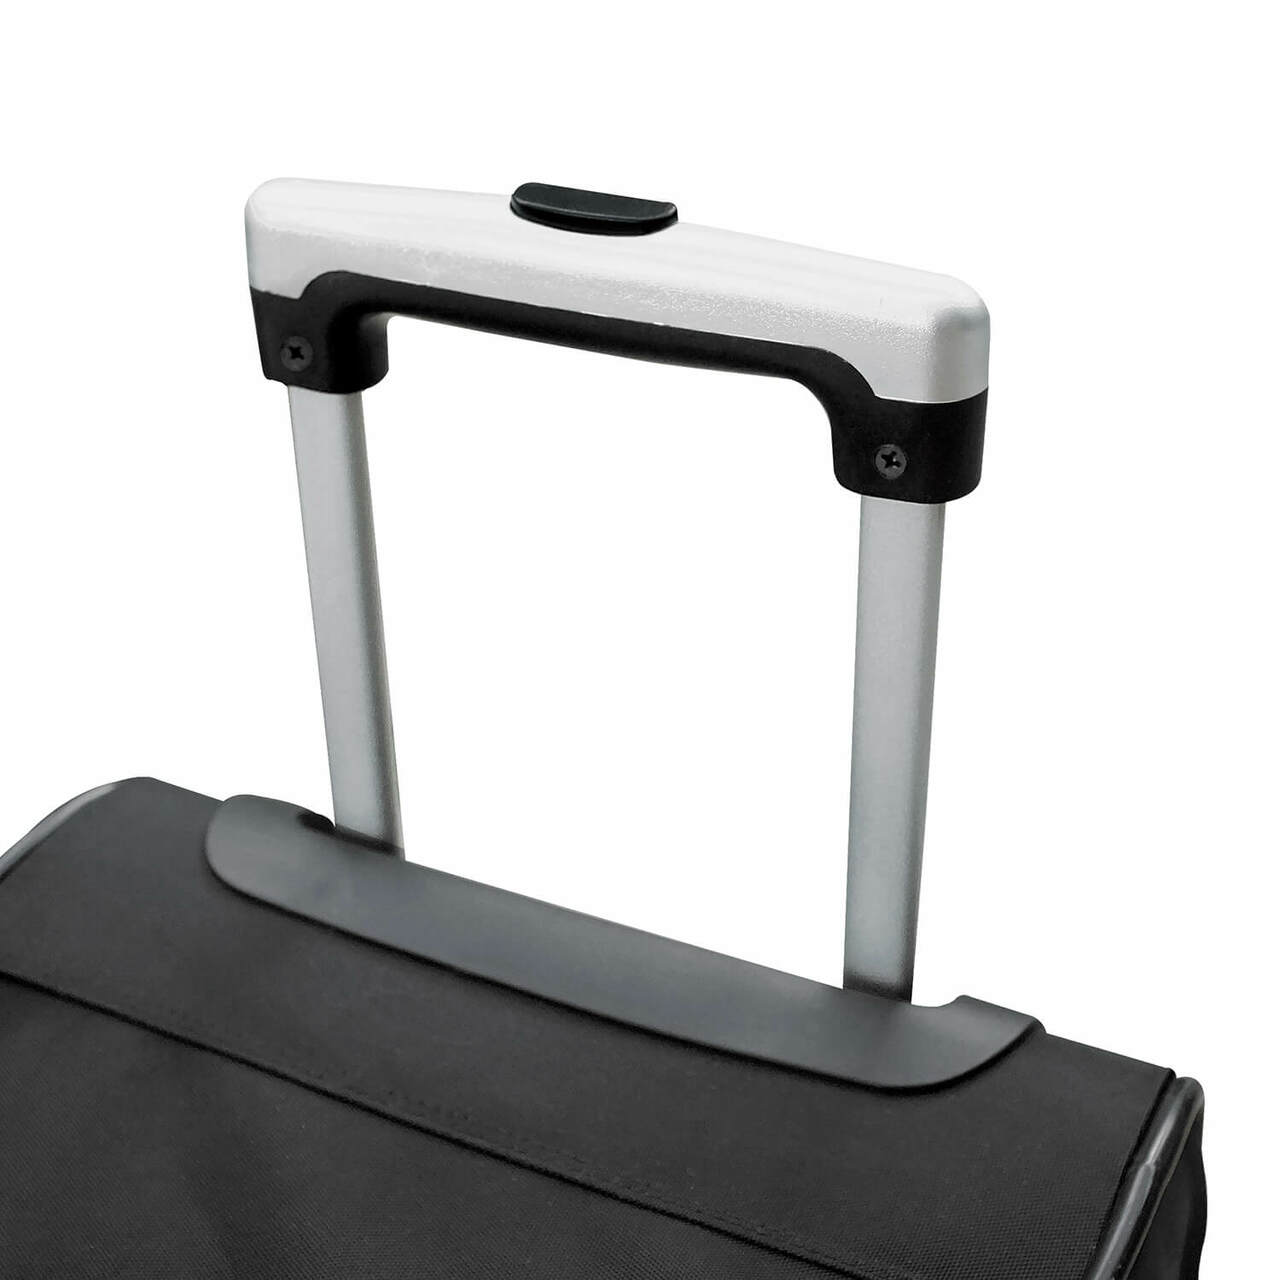 Clemson Luggage | Clemson Wheeled Carry On Luggage